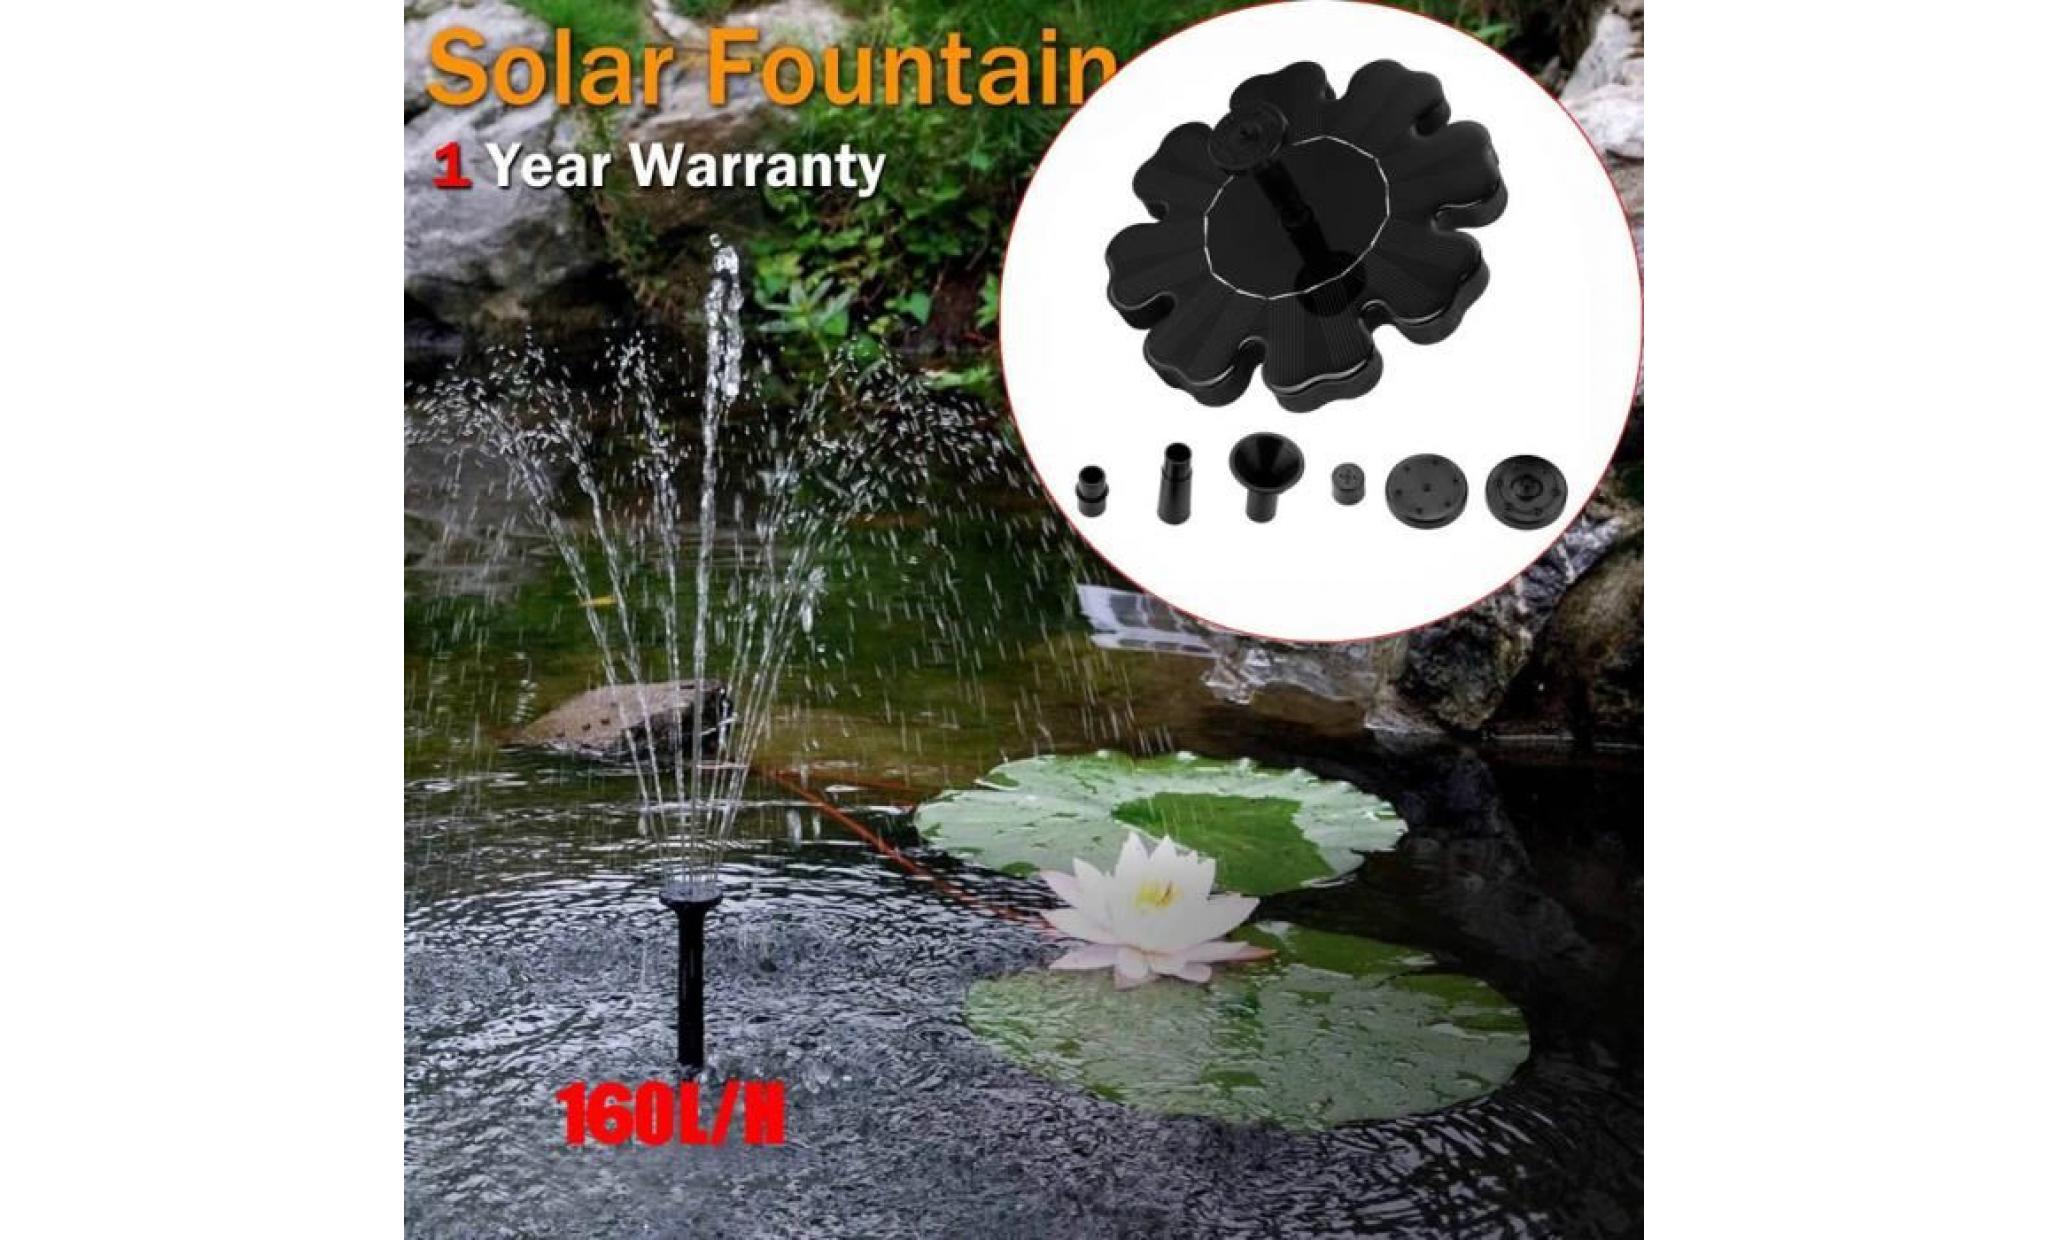 poi@ extérieur à énergie solaire oiseaux bain d'eau fontaine pompe avec led pour piscine jardin noir_31